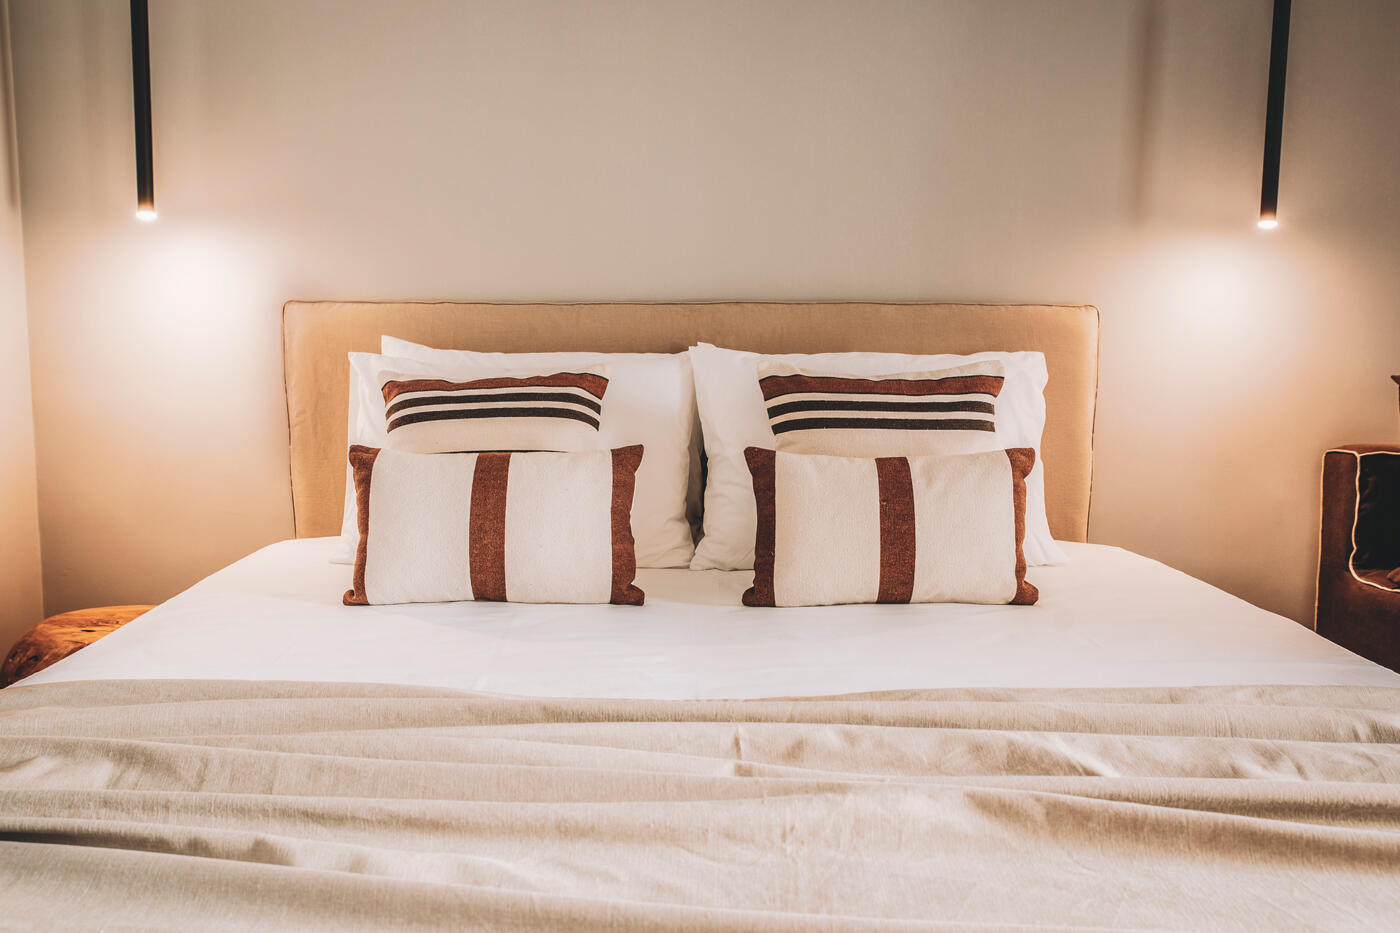 Bett mit Holzettkante und rot weißen Kissen. Neben dem Bettkopf hängen zwei Lampen.